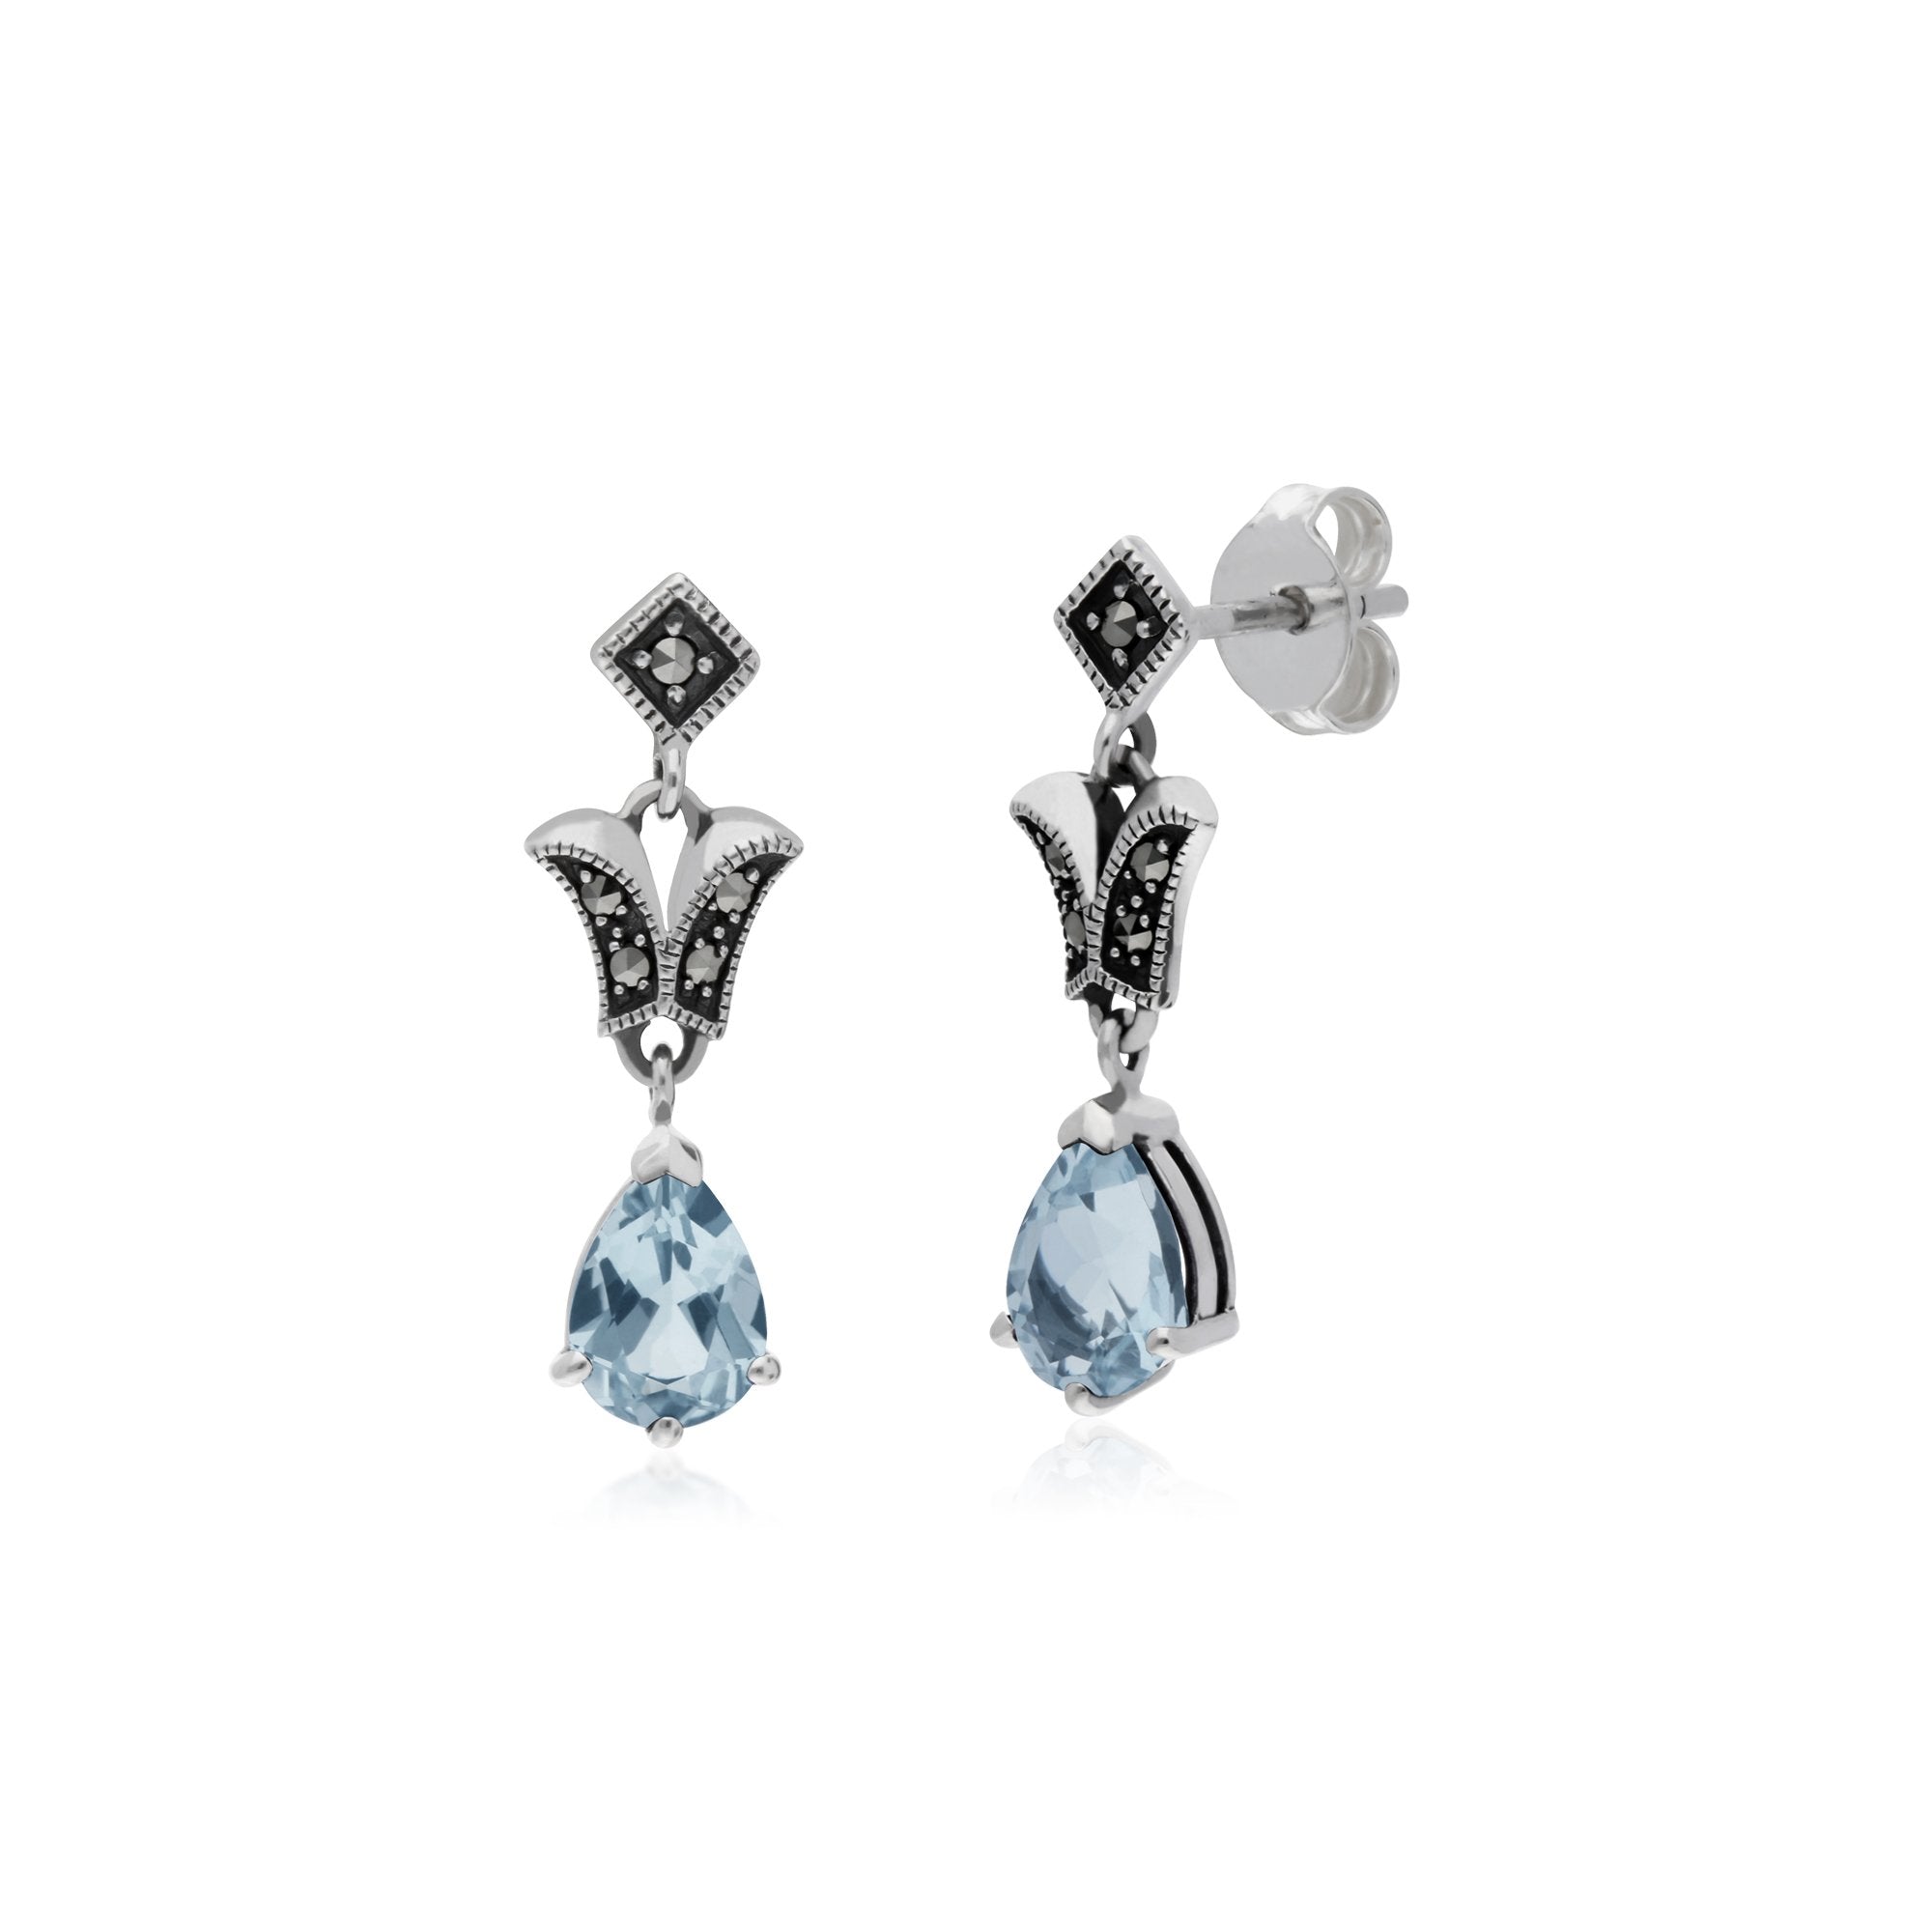 Art Nouveau Style Pear Blue Topaz & Marcasite Drop Earrings in 925 Sterling Silver